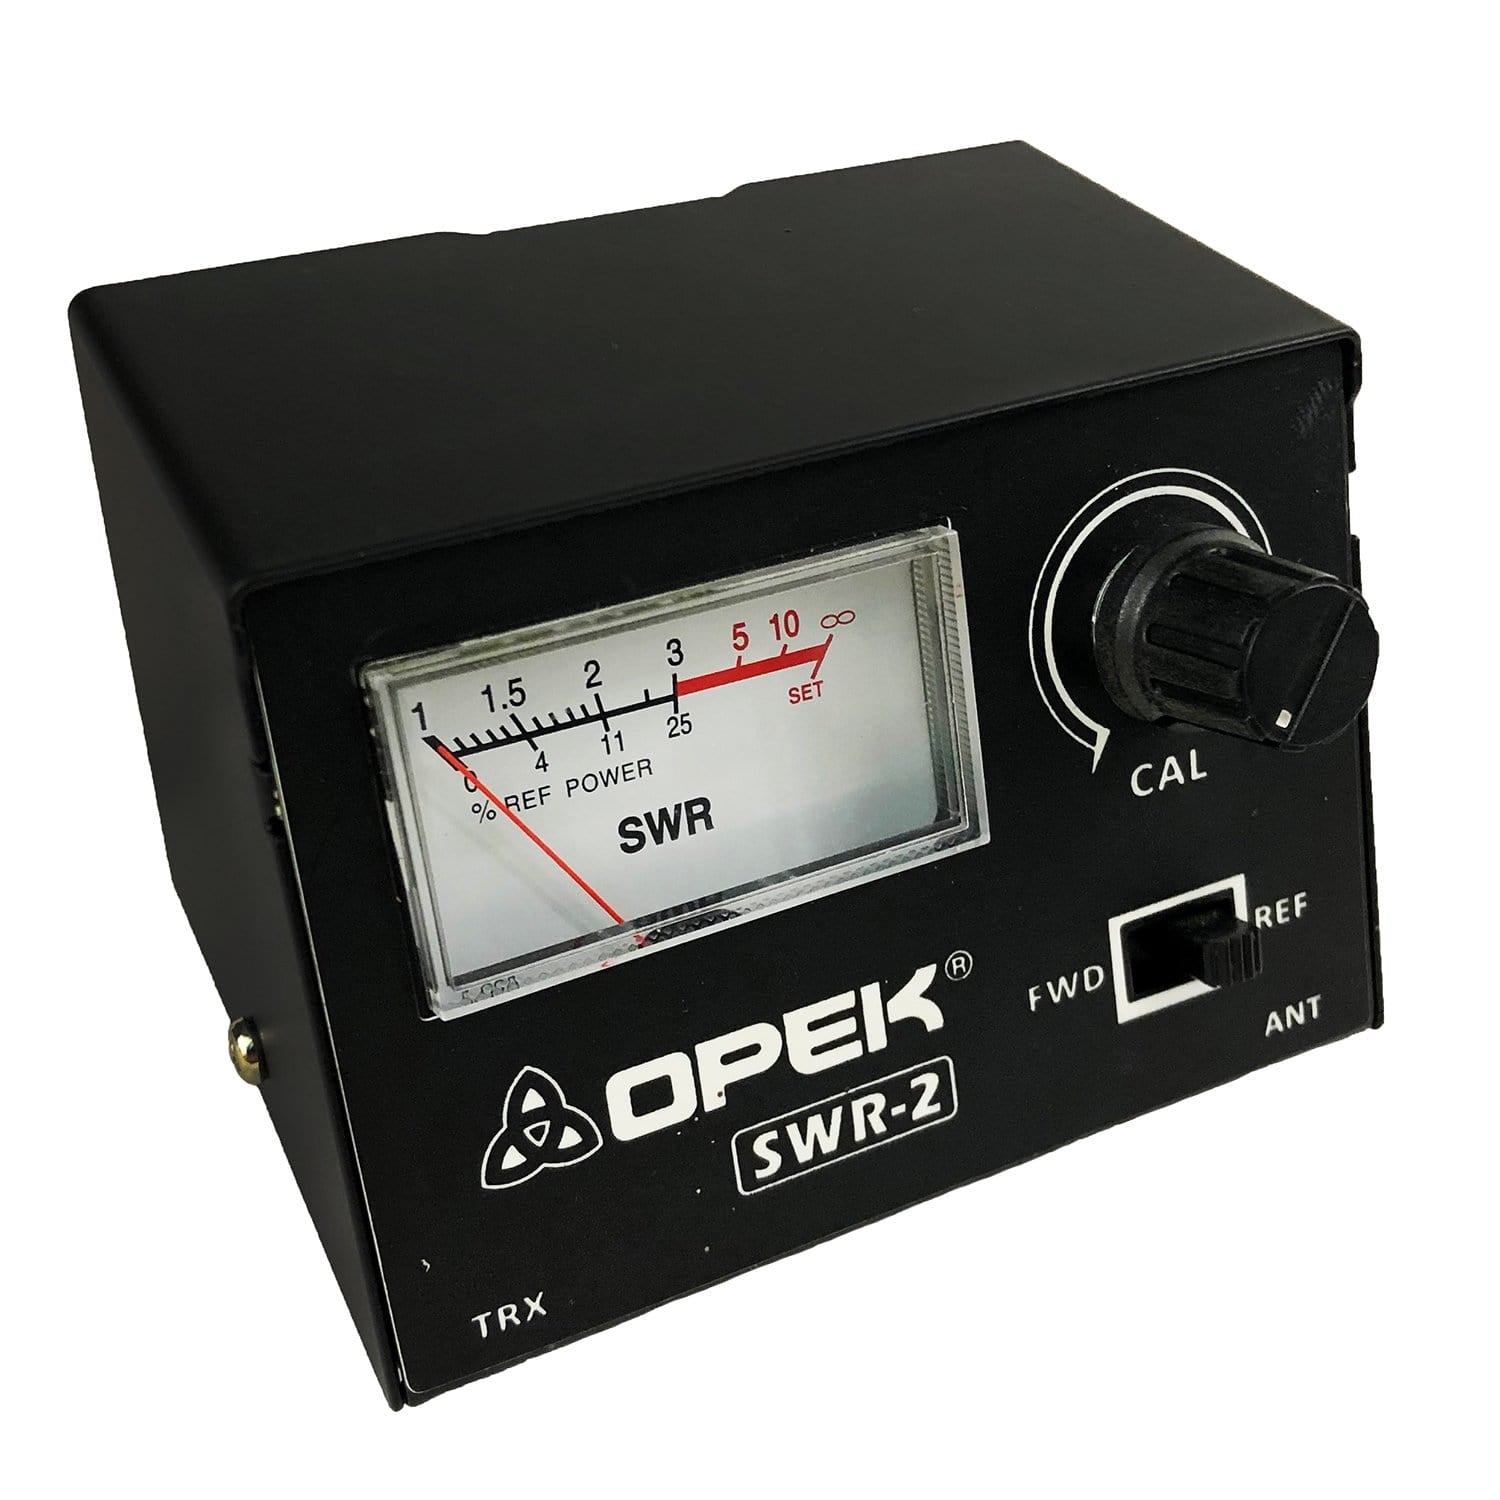 Opek SWR-2 Meter 1.7-30 Mhz Ham Radio Meter